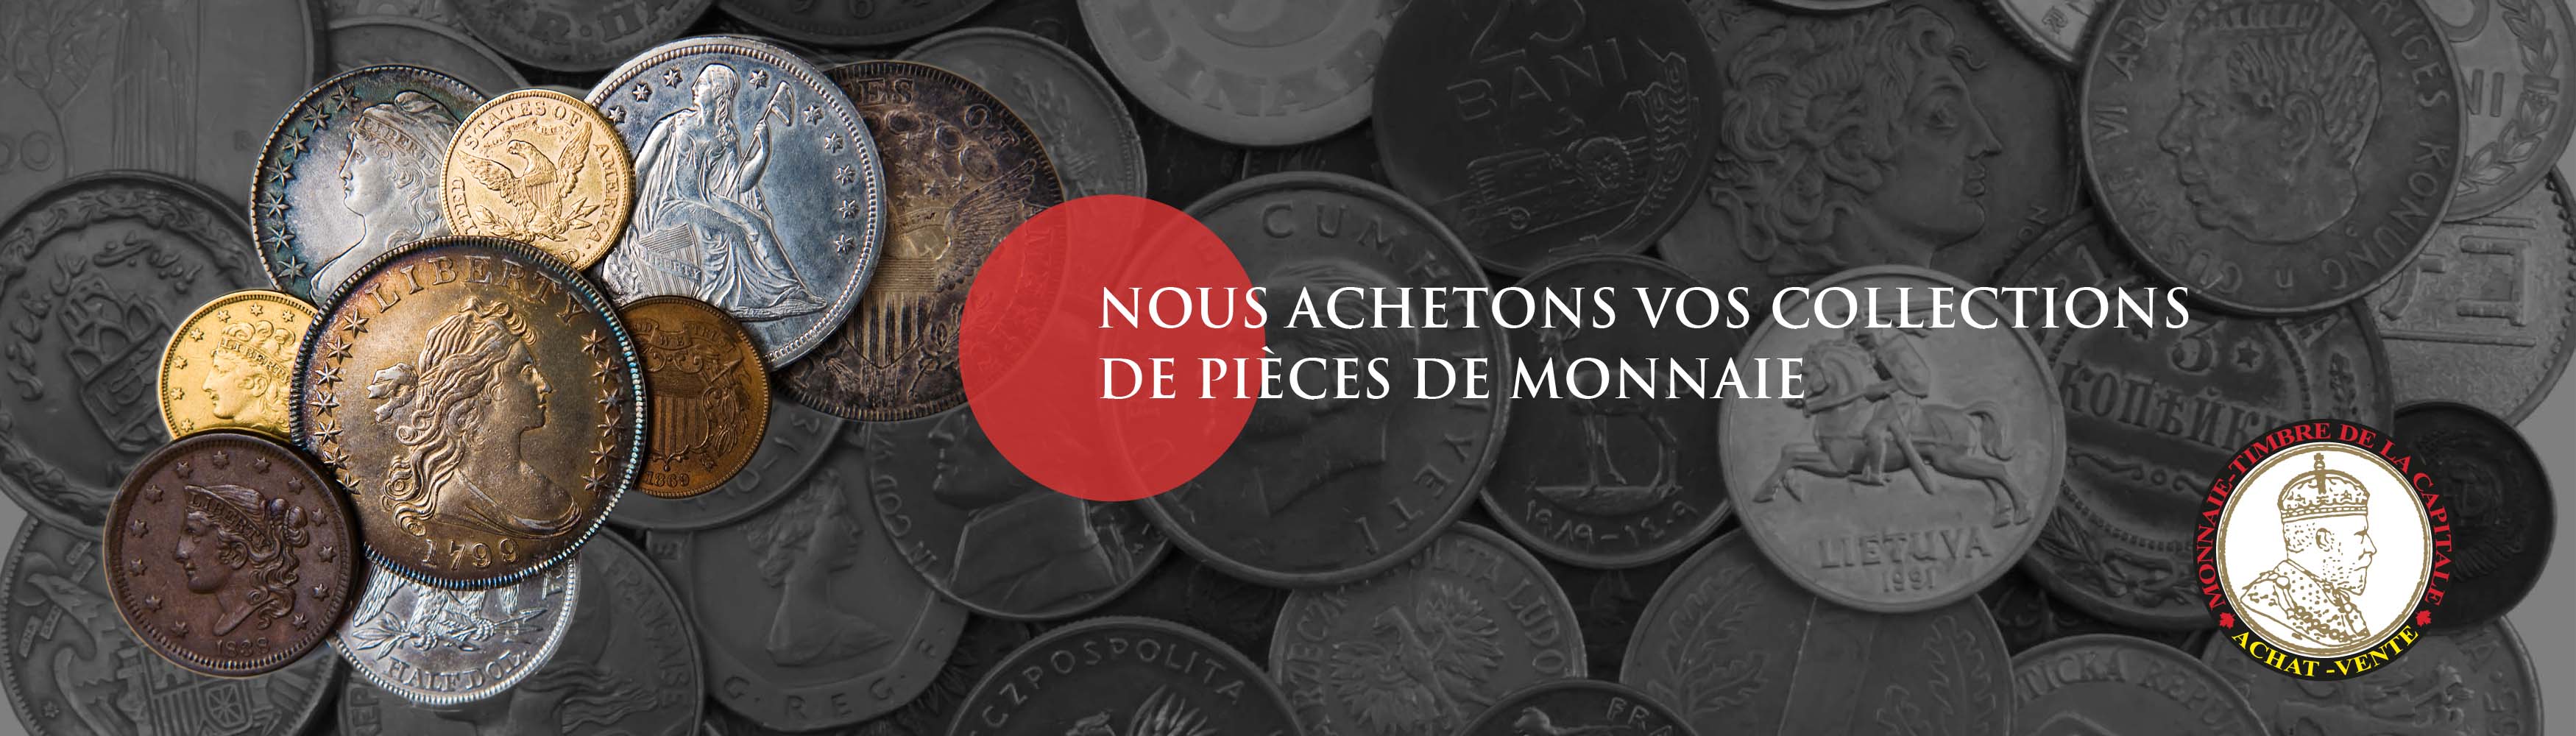 Achat d'or, bijoux, métaux précieux et collections de monnaie | Meilleur prix à Québec. Achat de diamants, montres Rolex et monnaie royale